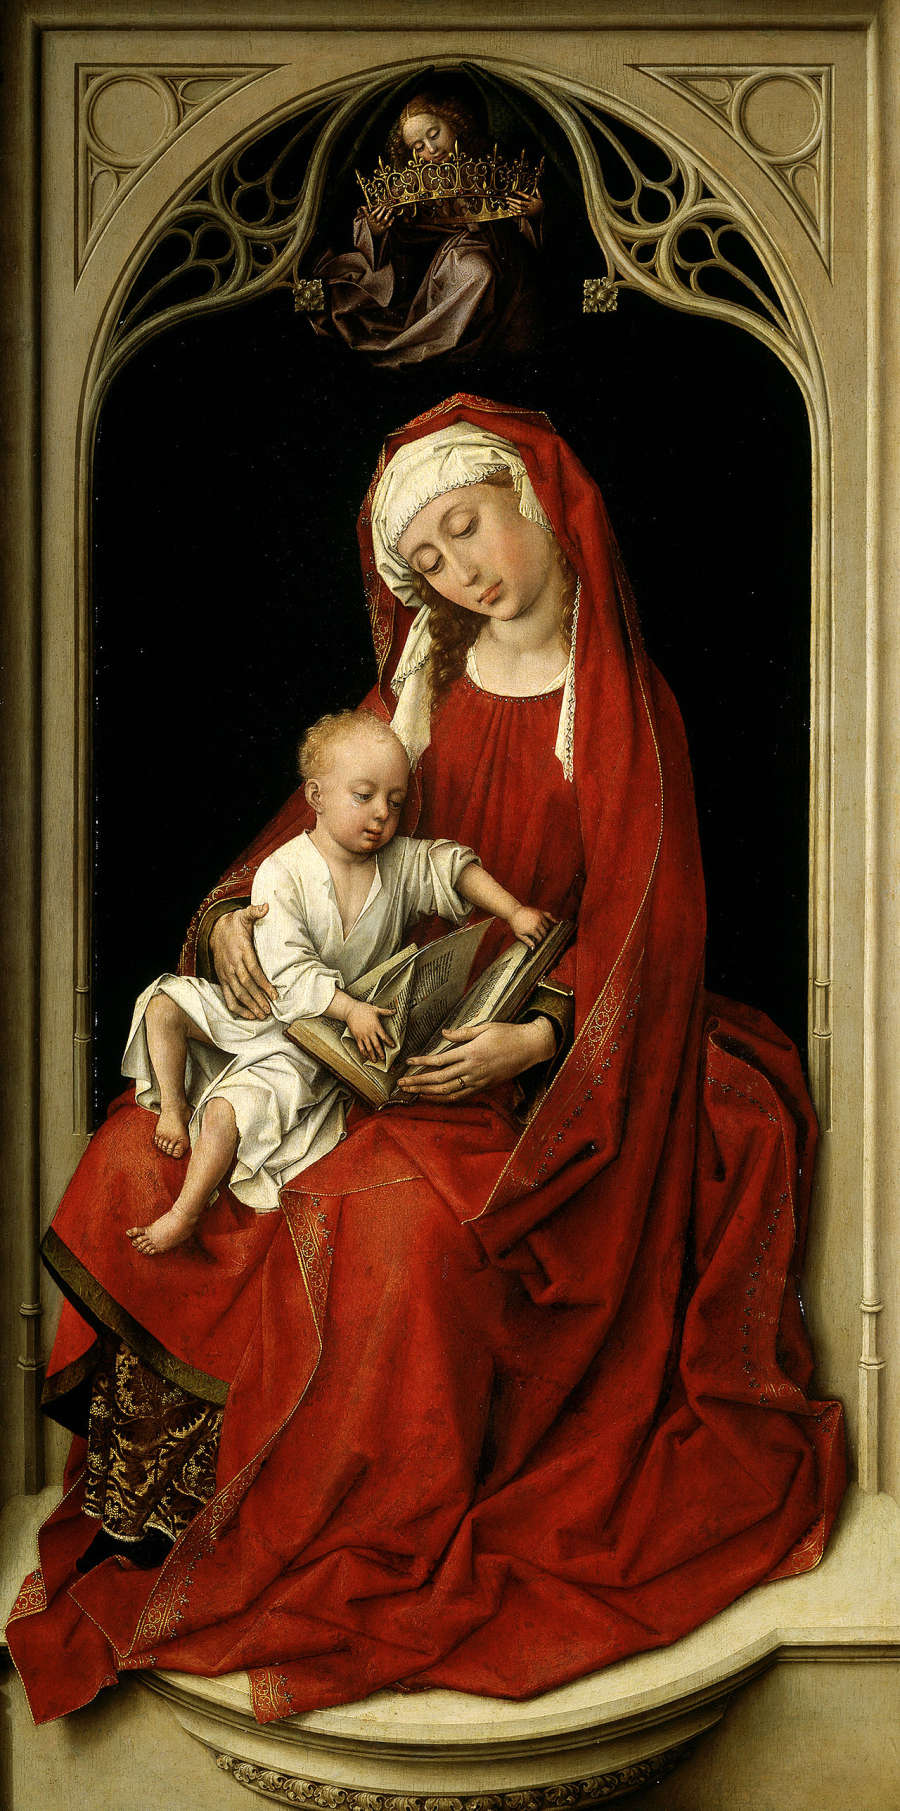 Rogier_van_der_Weyden_-_Virgin_and_Child_(Durán_Madonna)_-_Prado_P02722.jpg